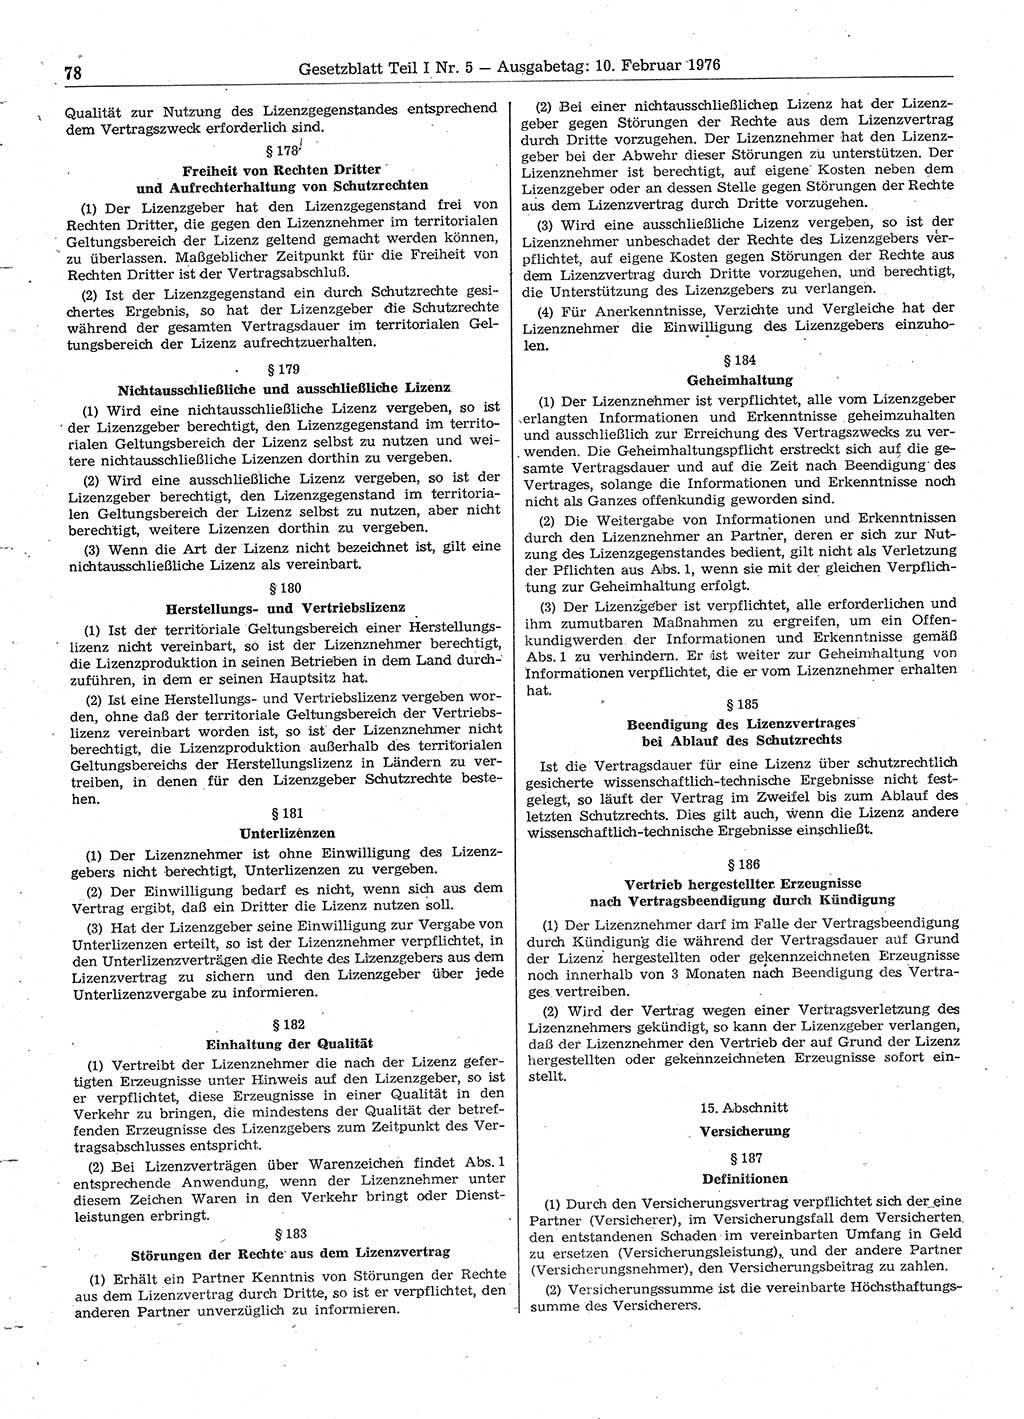 Gesetzblatt (GBl.) der Deutschen Demokratischen Republik (DDR) Teil Ⅰ 1976, Seite 78 (GBl. DDR Ⅰ 1976, S. 78)